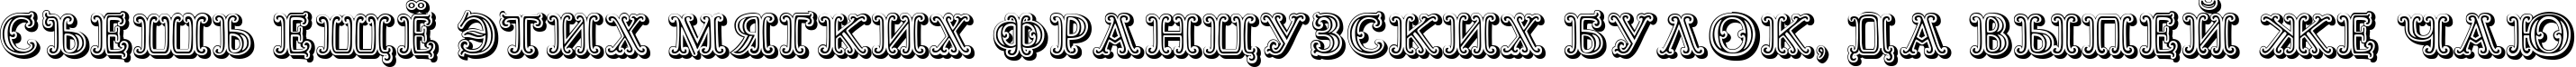 Пример написания шрифтом Goudy Decor ShodwnC текста на русском